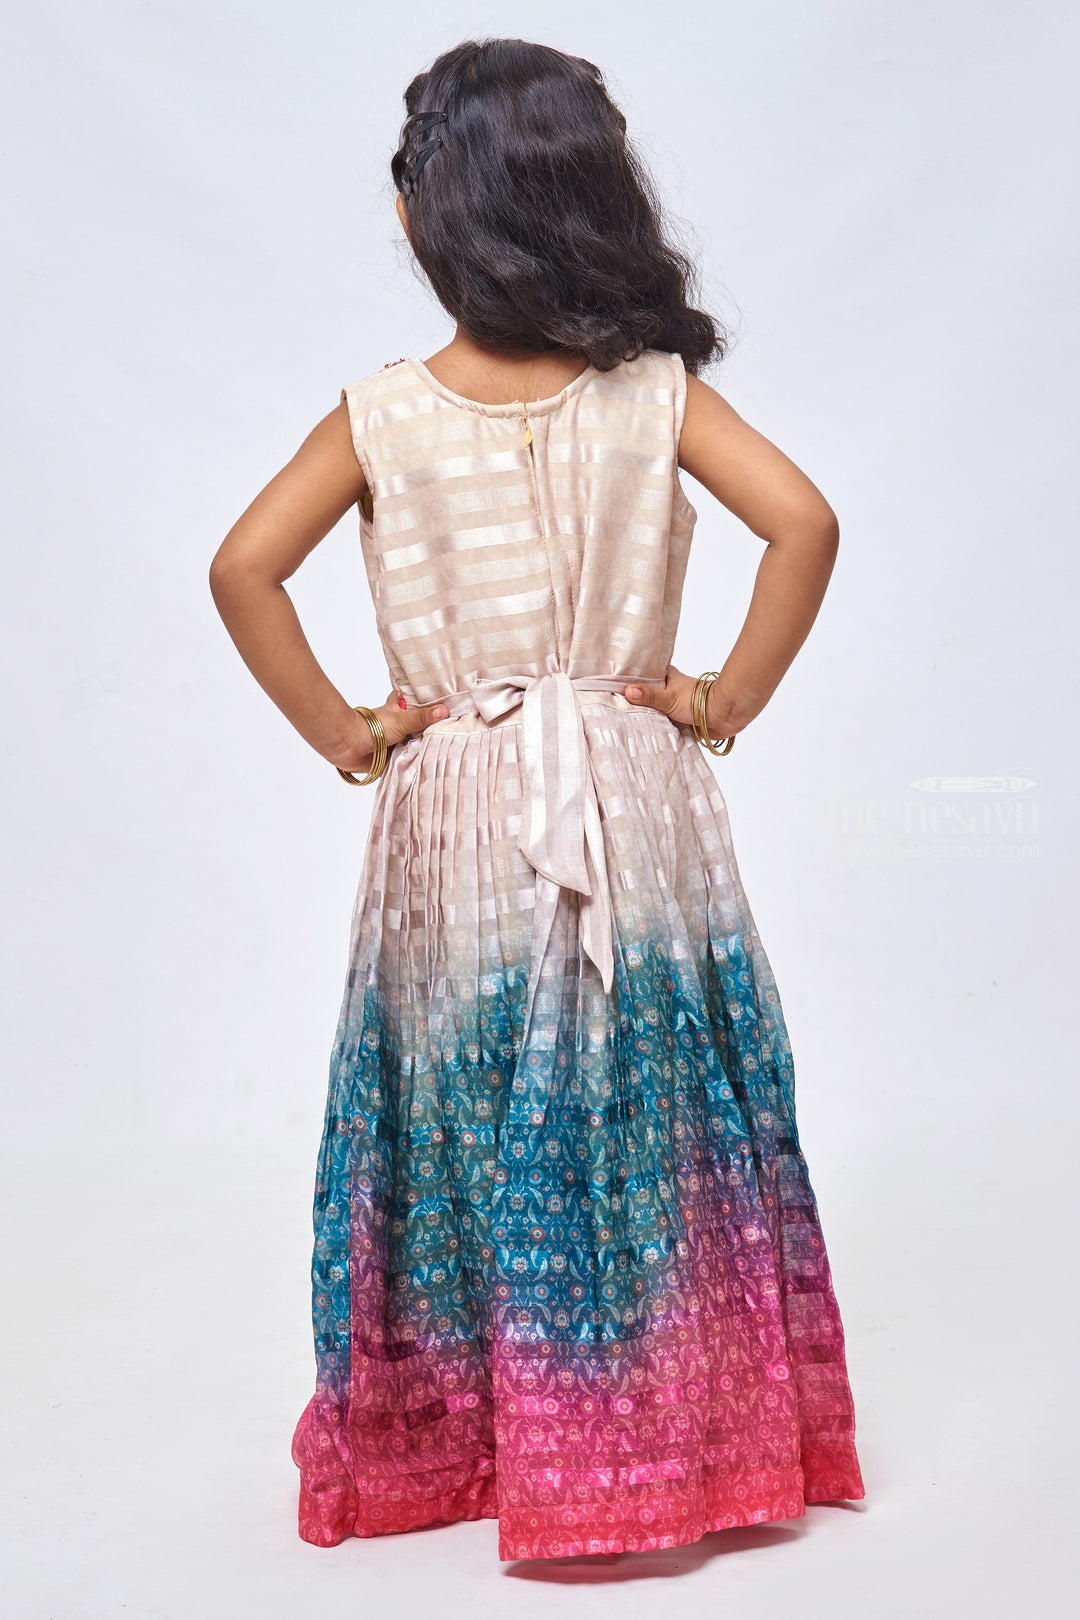 The Nesavu Girls Party Gown Zardosi Brilliance: Striped & Pleated Beige Gown for Girls Nesavu Festive Wear Anarkali Dresses for Girls | Full length Ethnic Gowns for Girls | The Nesavu